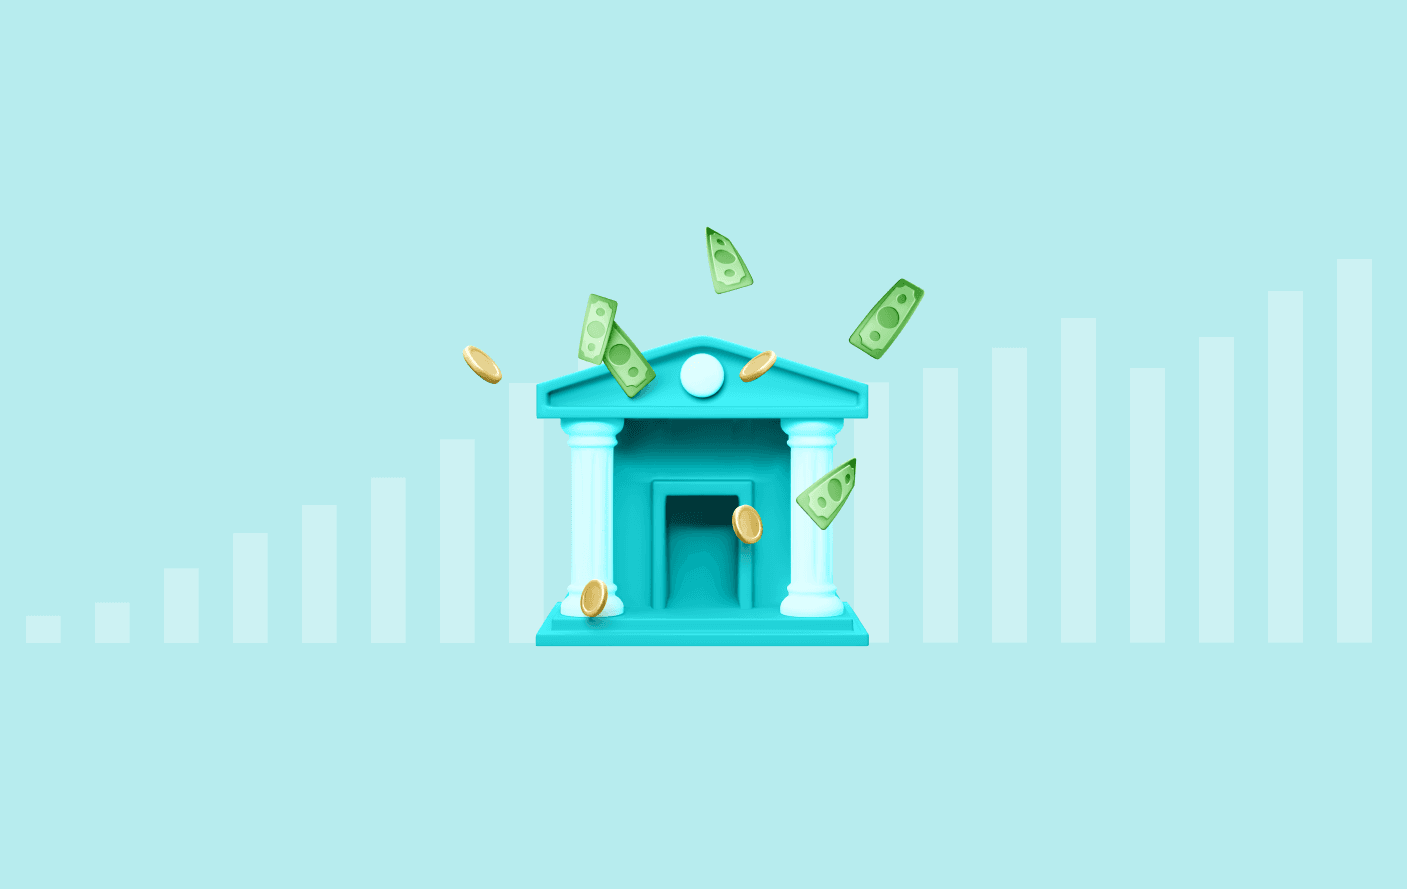 Imagem que mostra um banco no centro, com moedas e notas saindo dele. Ao fundo, um gráfico de colunas crescente em plano de fundo azulado.